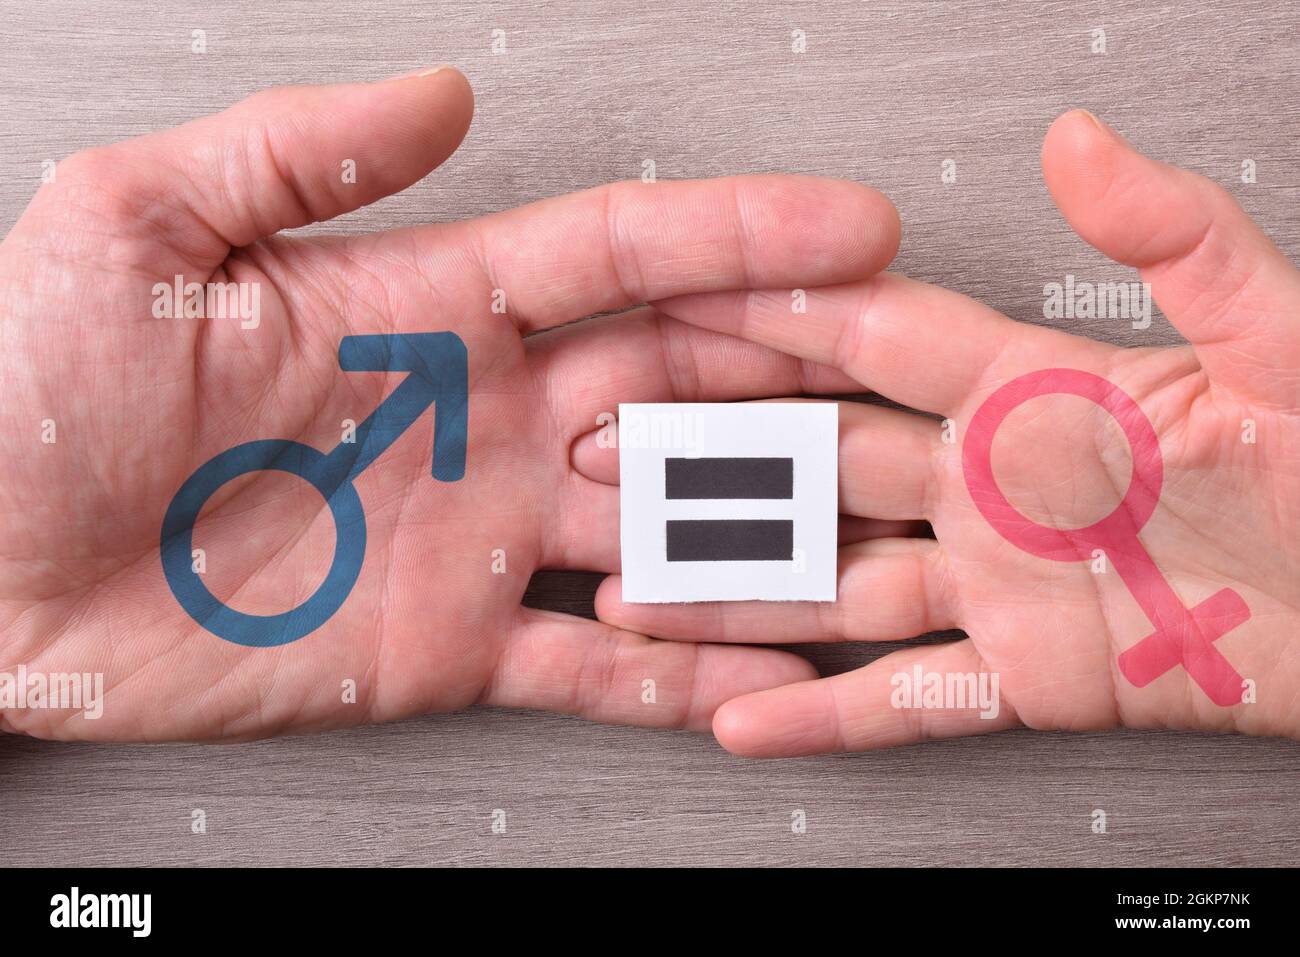 Main homme et femme entrelacées avec le symbole de l'égalité et du sexe sur une table en bois. Vue de dessus. Banque D'Images